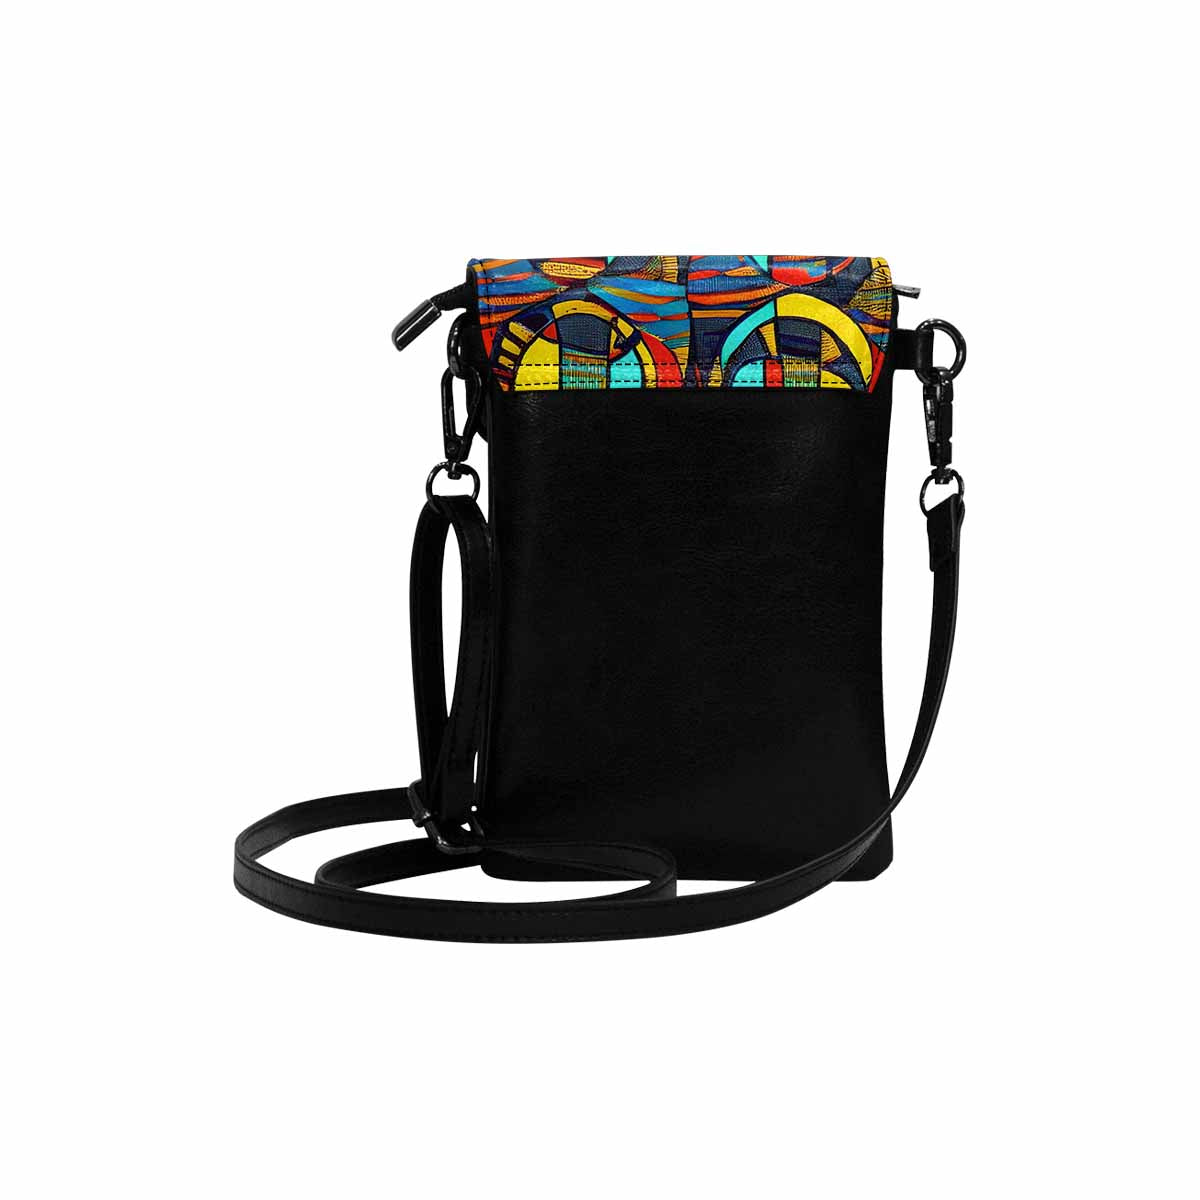 African art, cell phone, keys purse, design 02